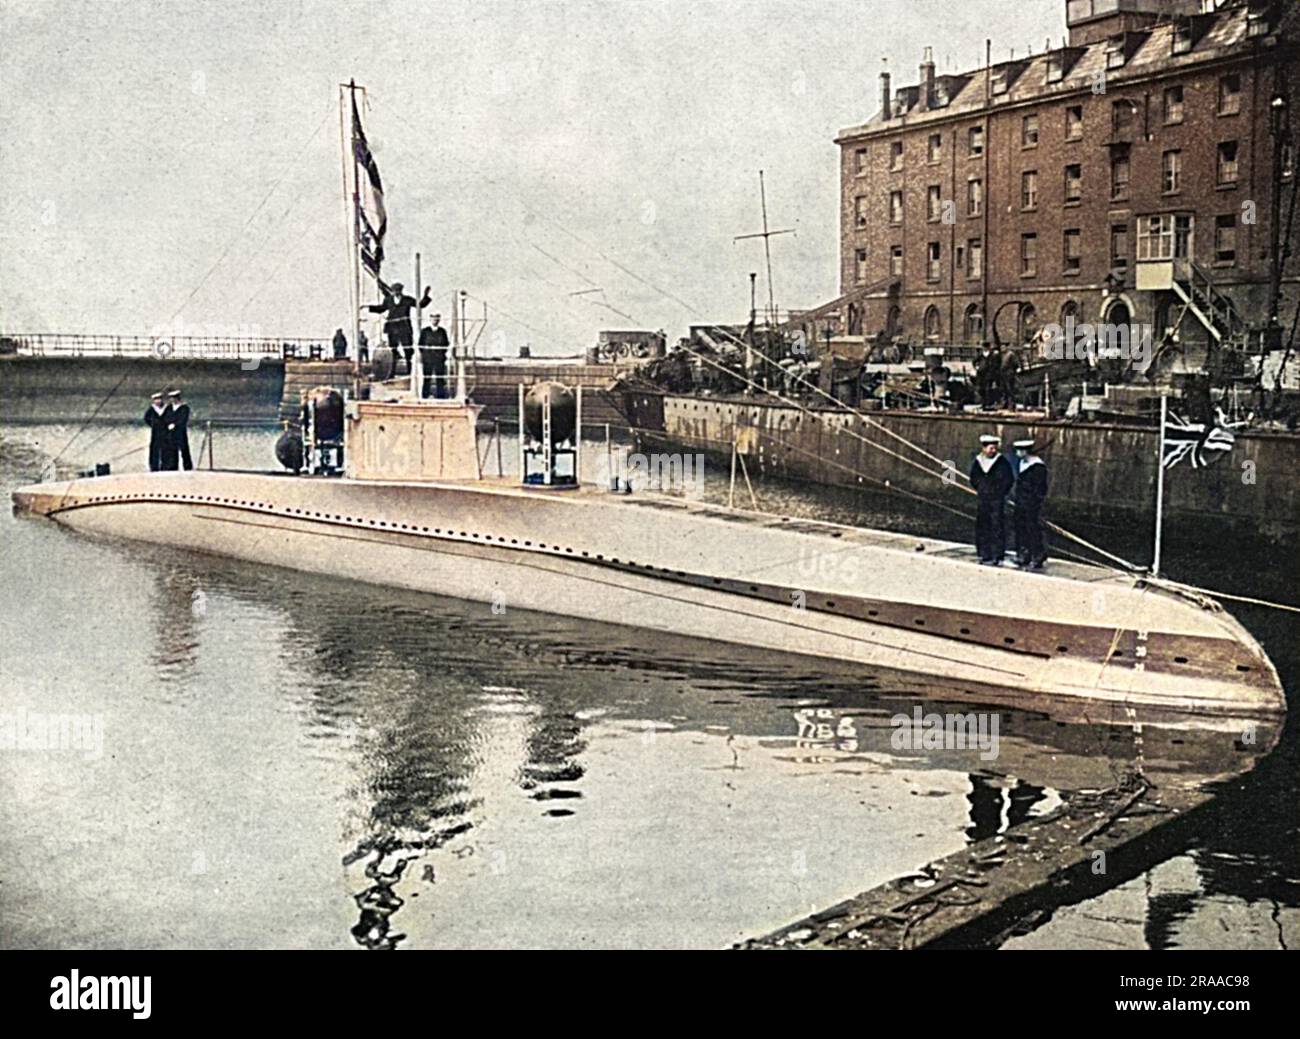 U C 5, un sous-marin allemand capturé, exposé à Temple Pier à Londres avec l'enseigne britannique survolant le drapeau allemand. Date: 1916 Banque D'Images